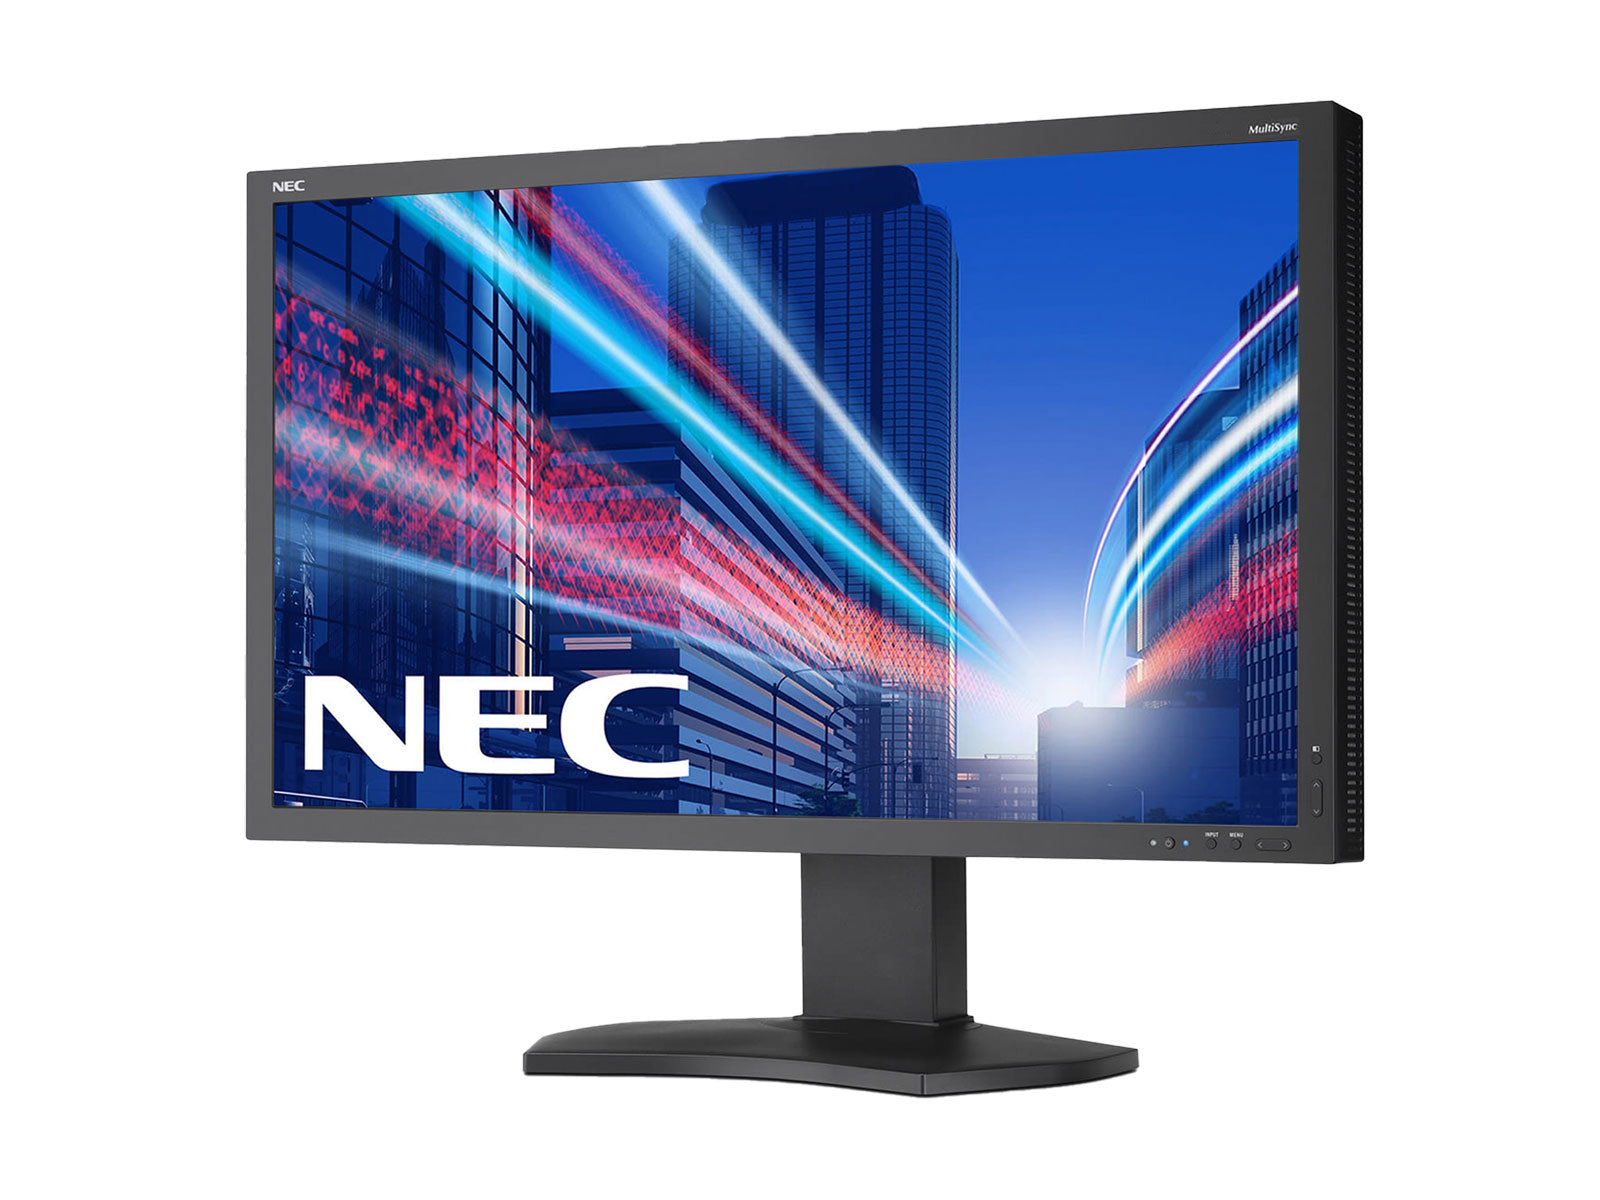 NEC MultiSync PA241W Moniteur graphique professionnel à écran large WUXGA 24" 1920 1200 x 241 XNUMX (PAXNUMXW)